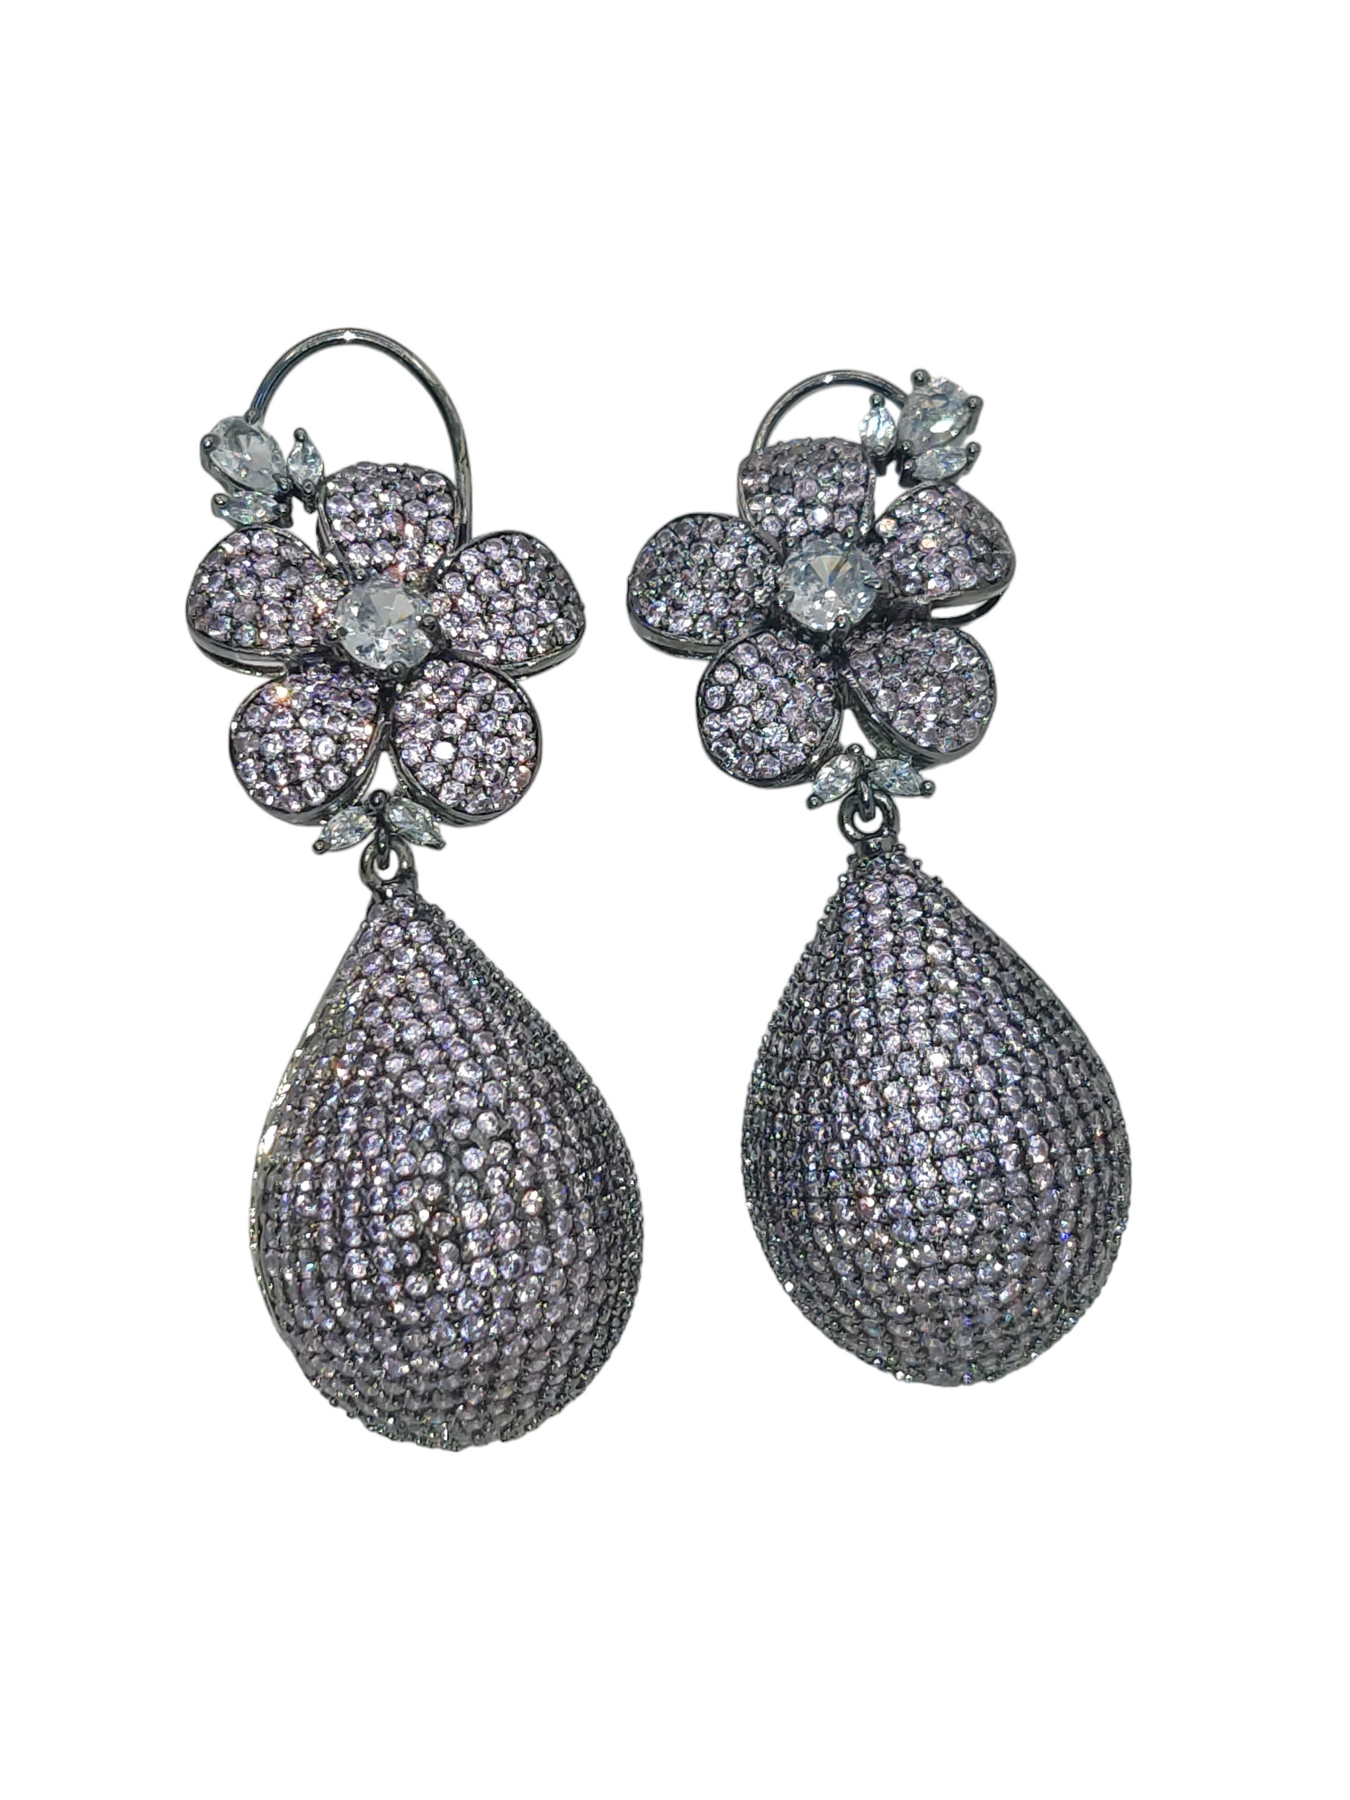 Buy Jewelled Gems - 7 Diamond Flower Shaped Earrings for women | Diamond  Earring at Amazon.in